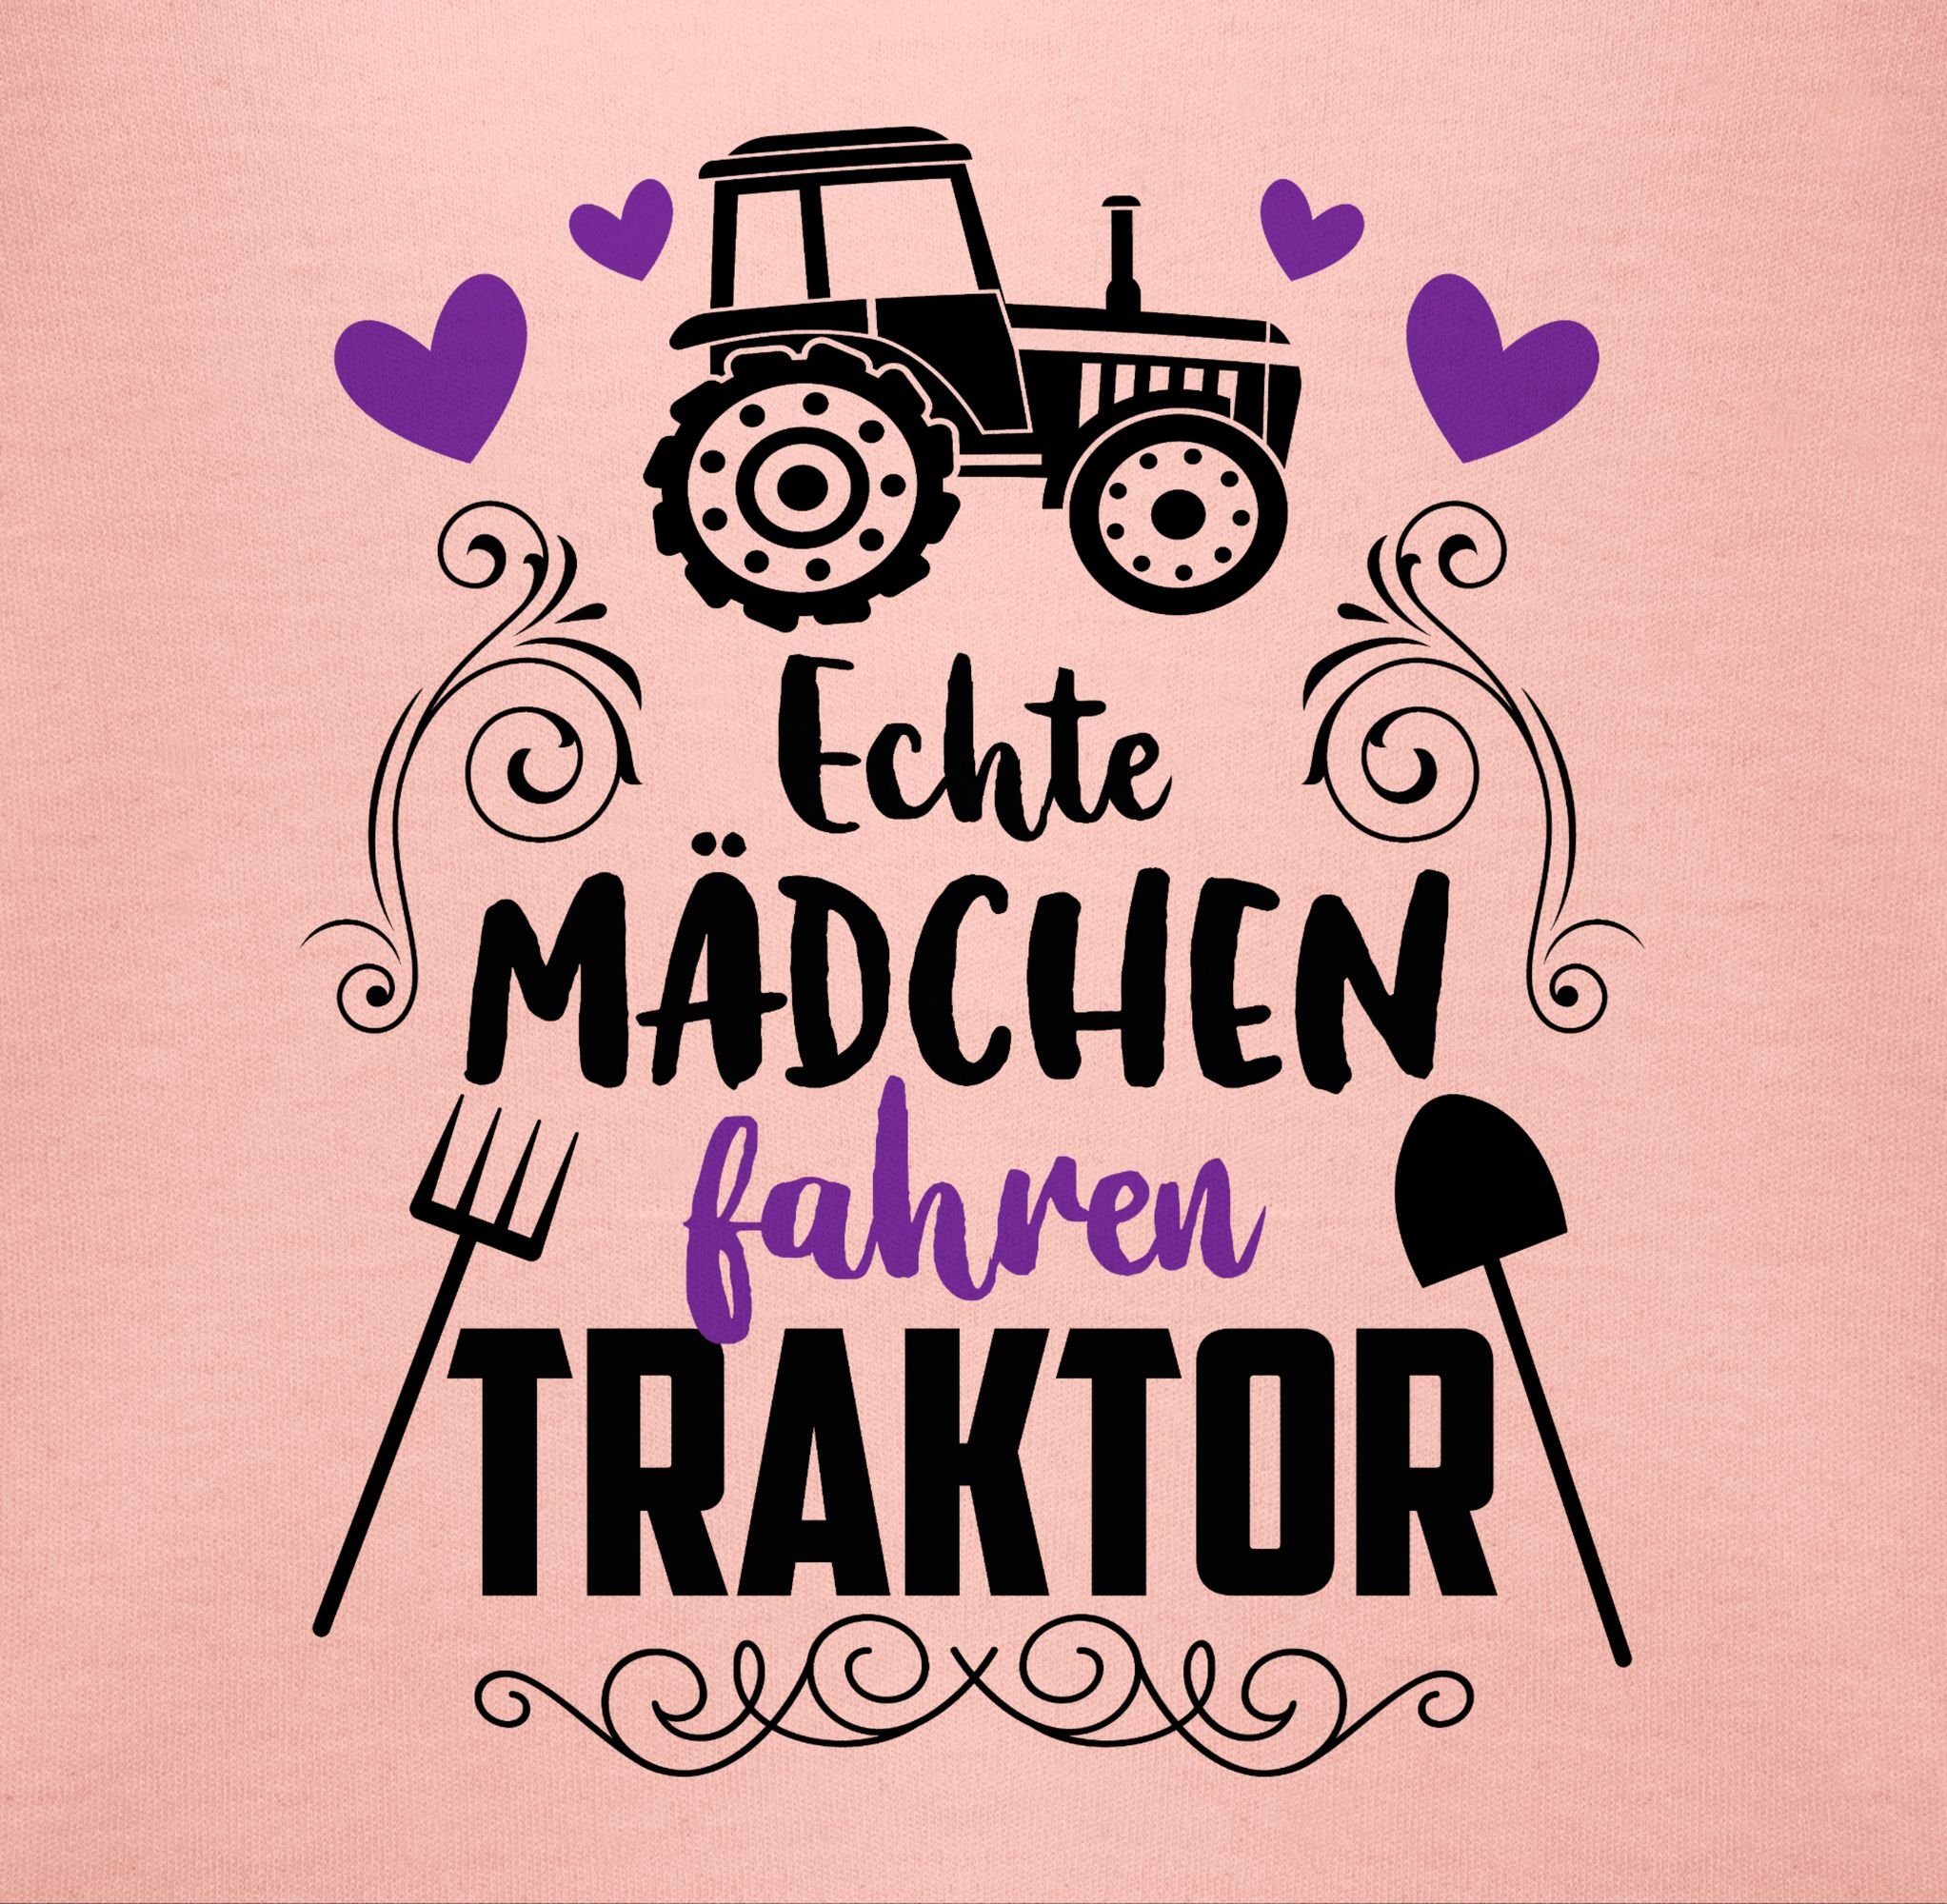 Baby 3 Echte Traktor und Shirtracer Co. Mädchen - schwarz Shirtbody fahren Babyrosa Bagger Traktor